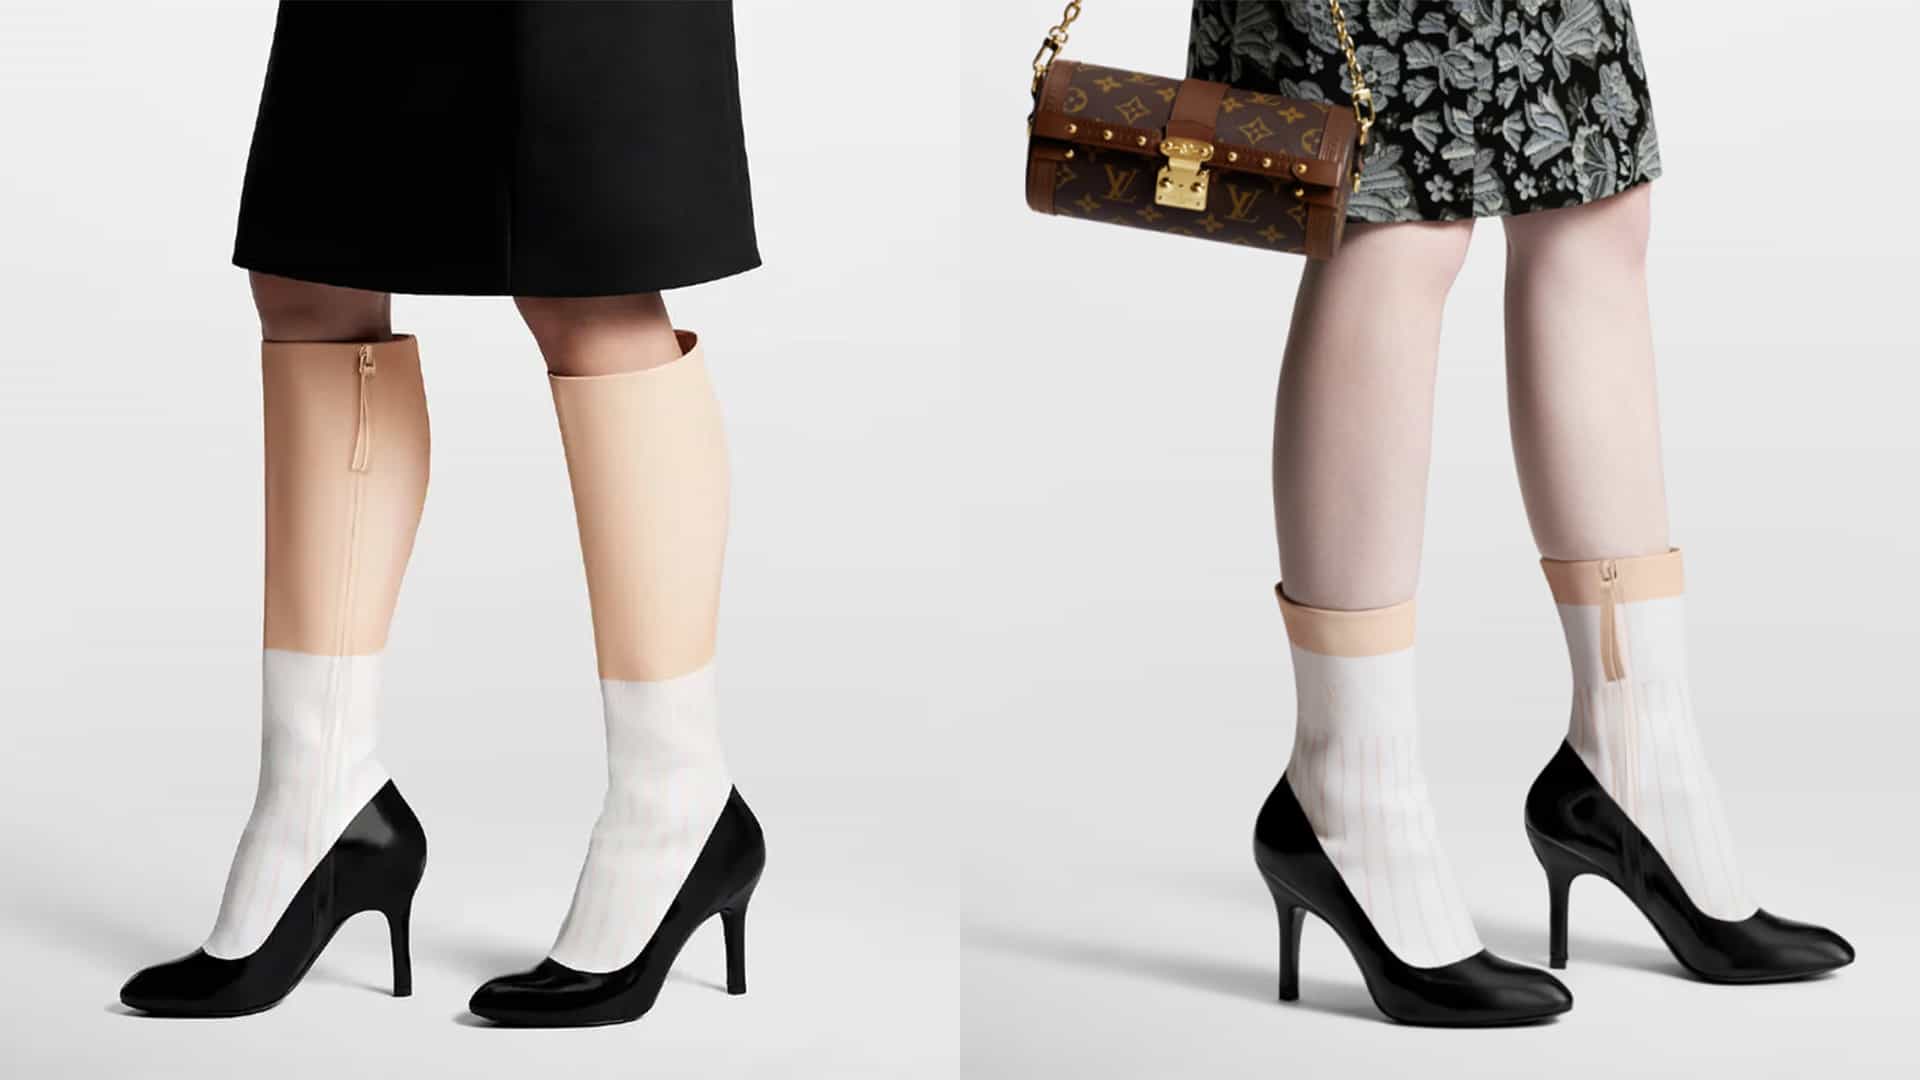 Las botas de pierna falsas de Louis Vuitton son la ilusión óptica más extraña del año